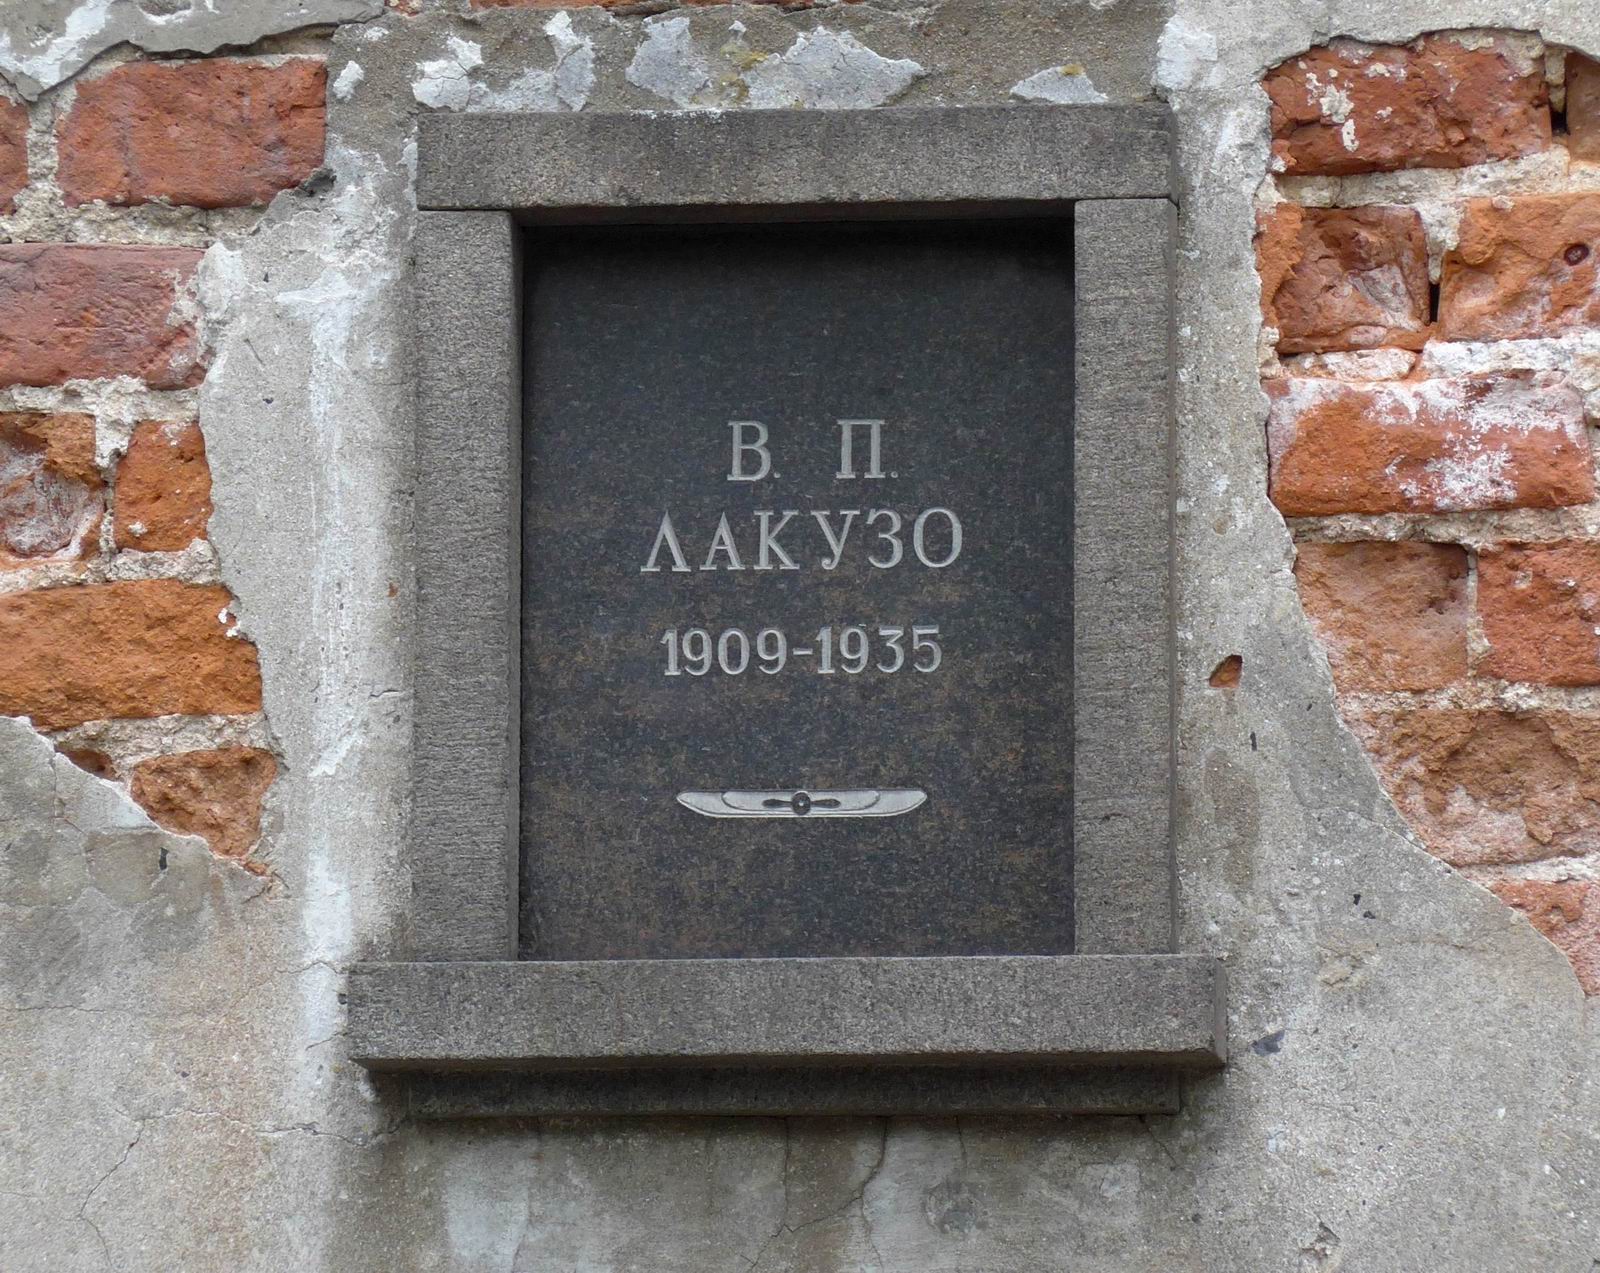 Плита на нише Лакузо В.П. (1909-1935), на Новодевичьем кладбище (колумбарий [3]-2). Нажмите левую кнопку мыши, чтобы увидеть общий вид секции.